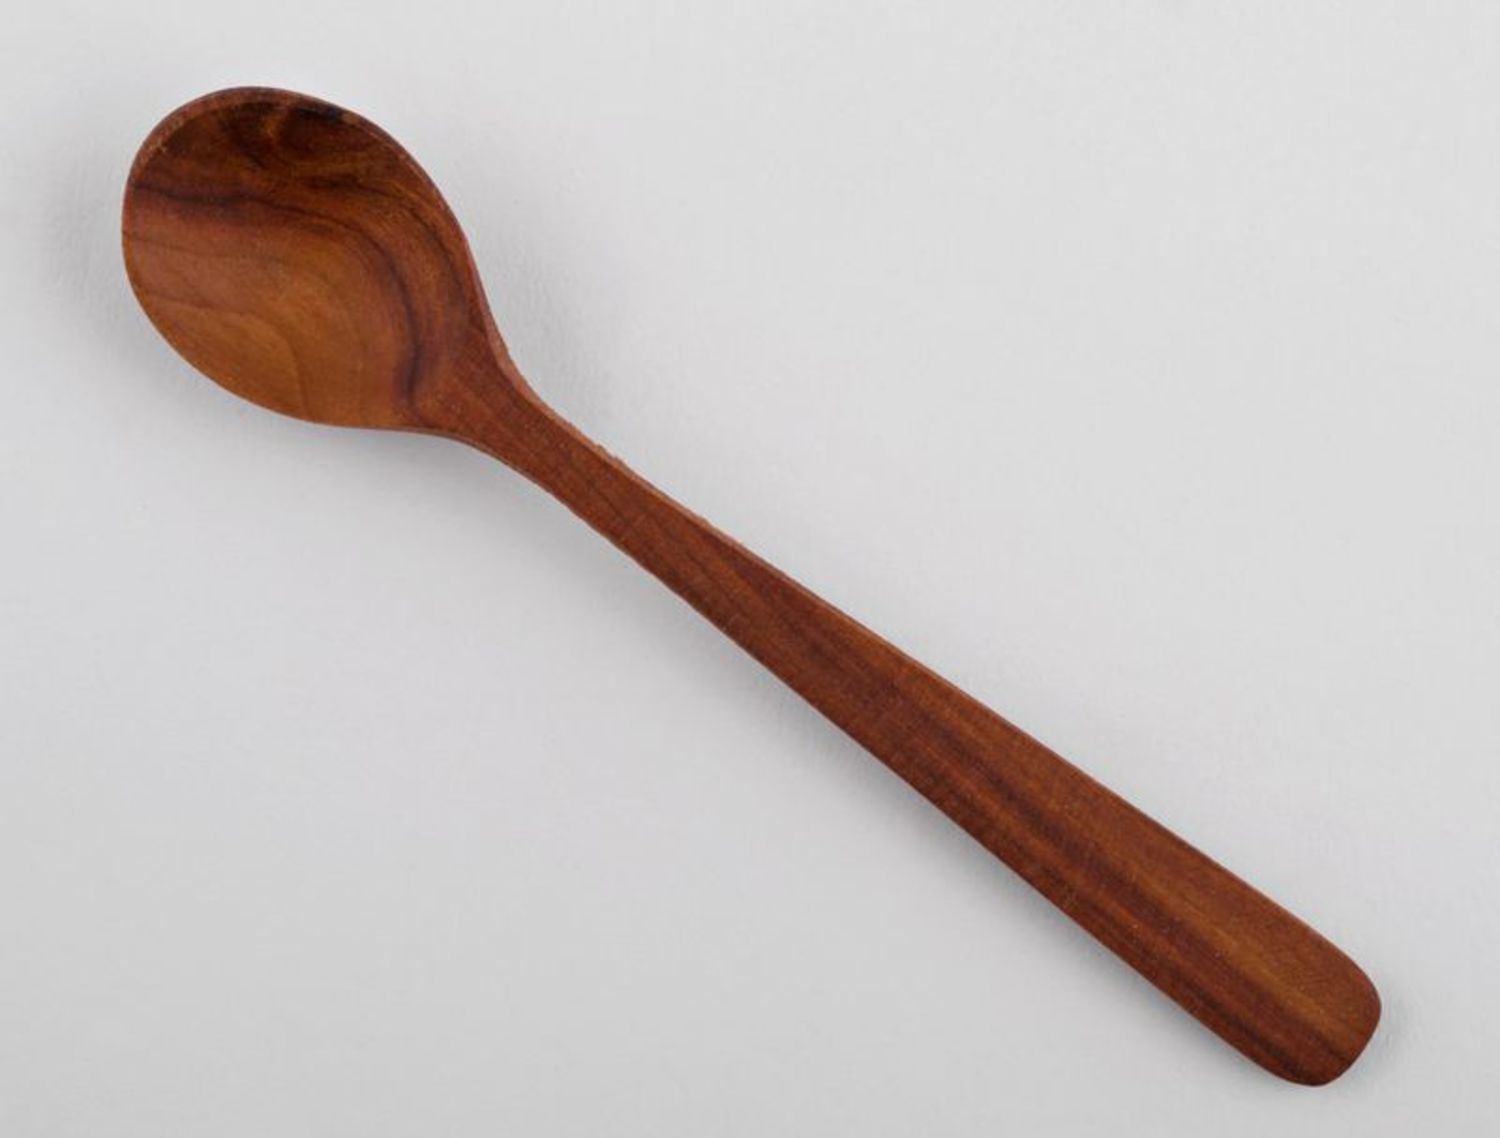 Wooden spoon. Деревянная ложка. Ложка деревянная узкая. Деревянная ложка на белом фоне. Деревянные ложки на прозрачном фоне.